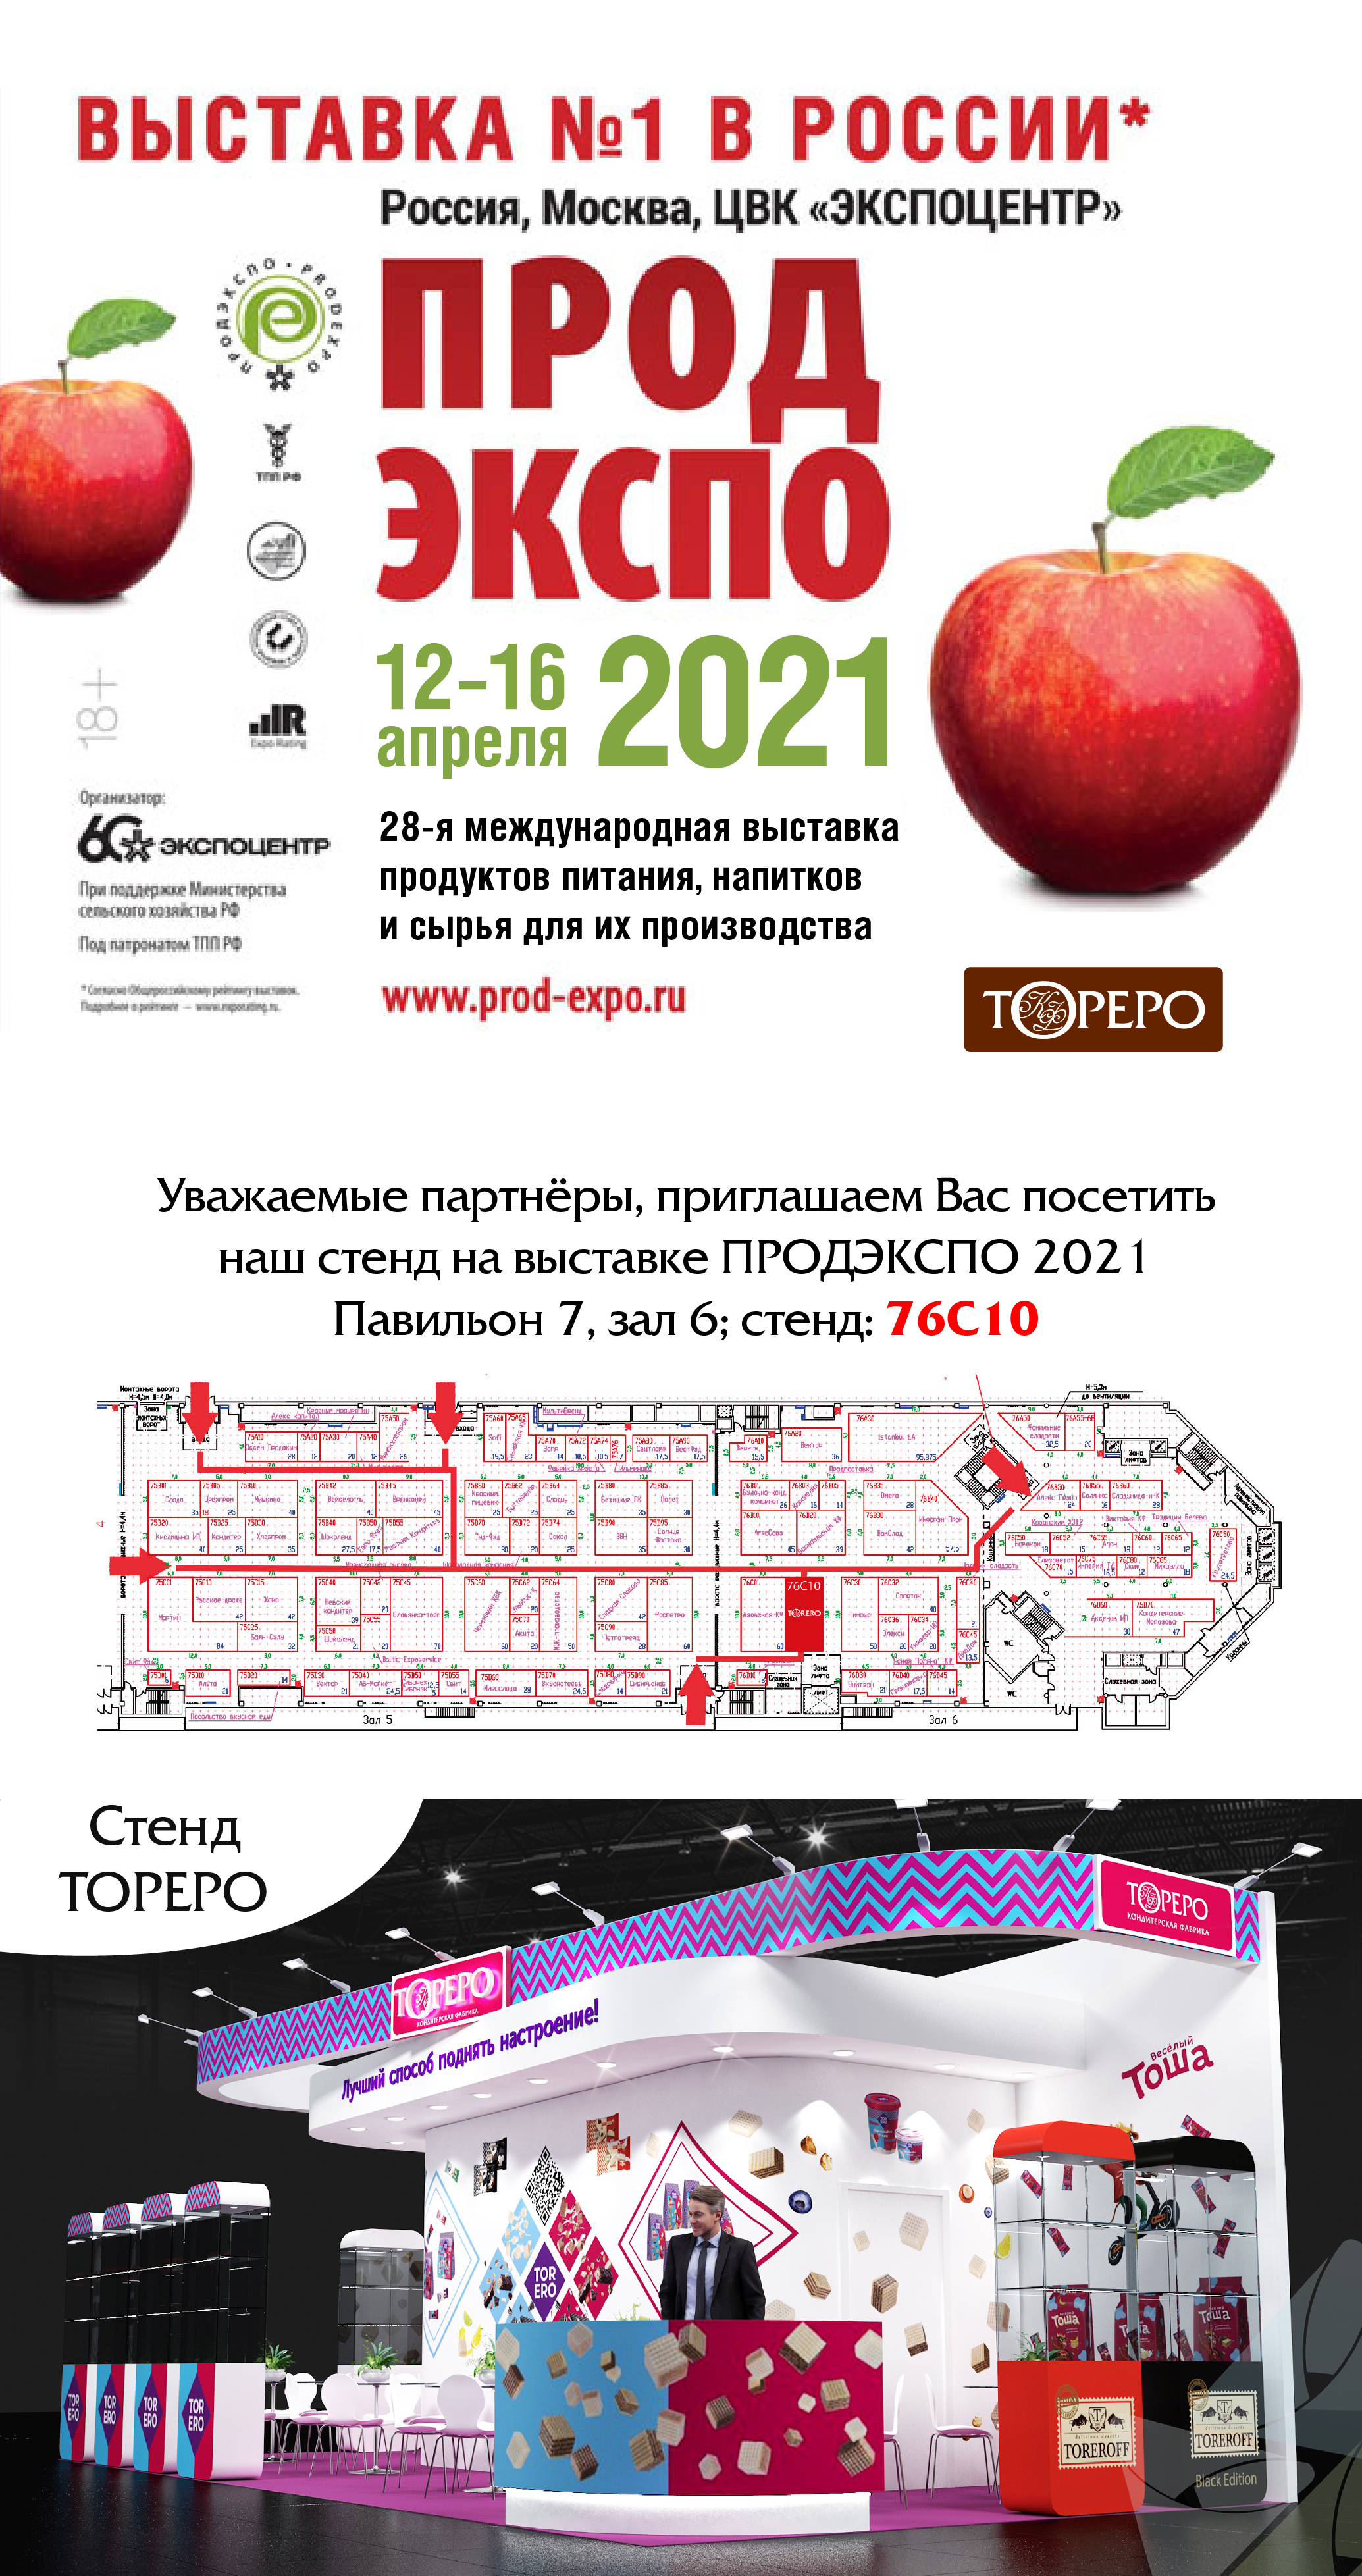 Кондитерская фабрика «ТОРЕРО» на выставке ПРОДЭКСПО 2021